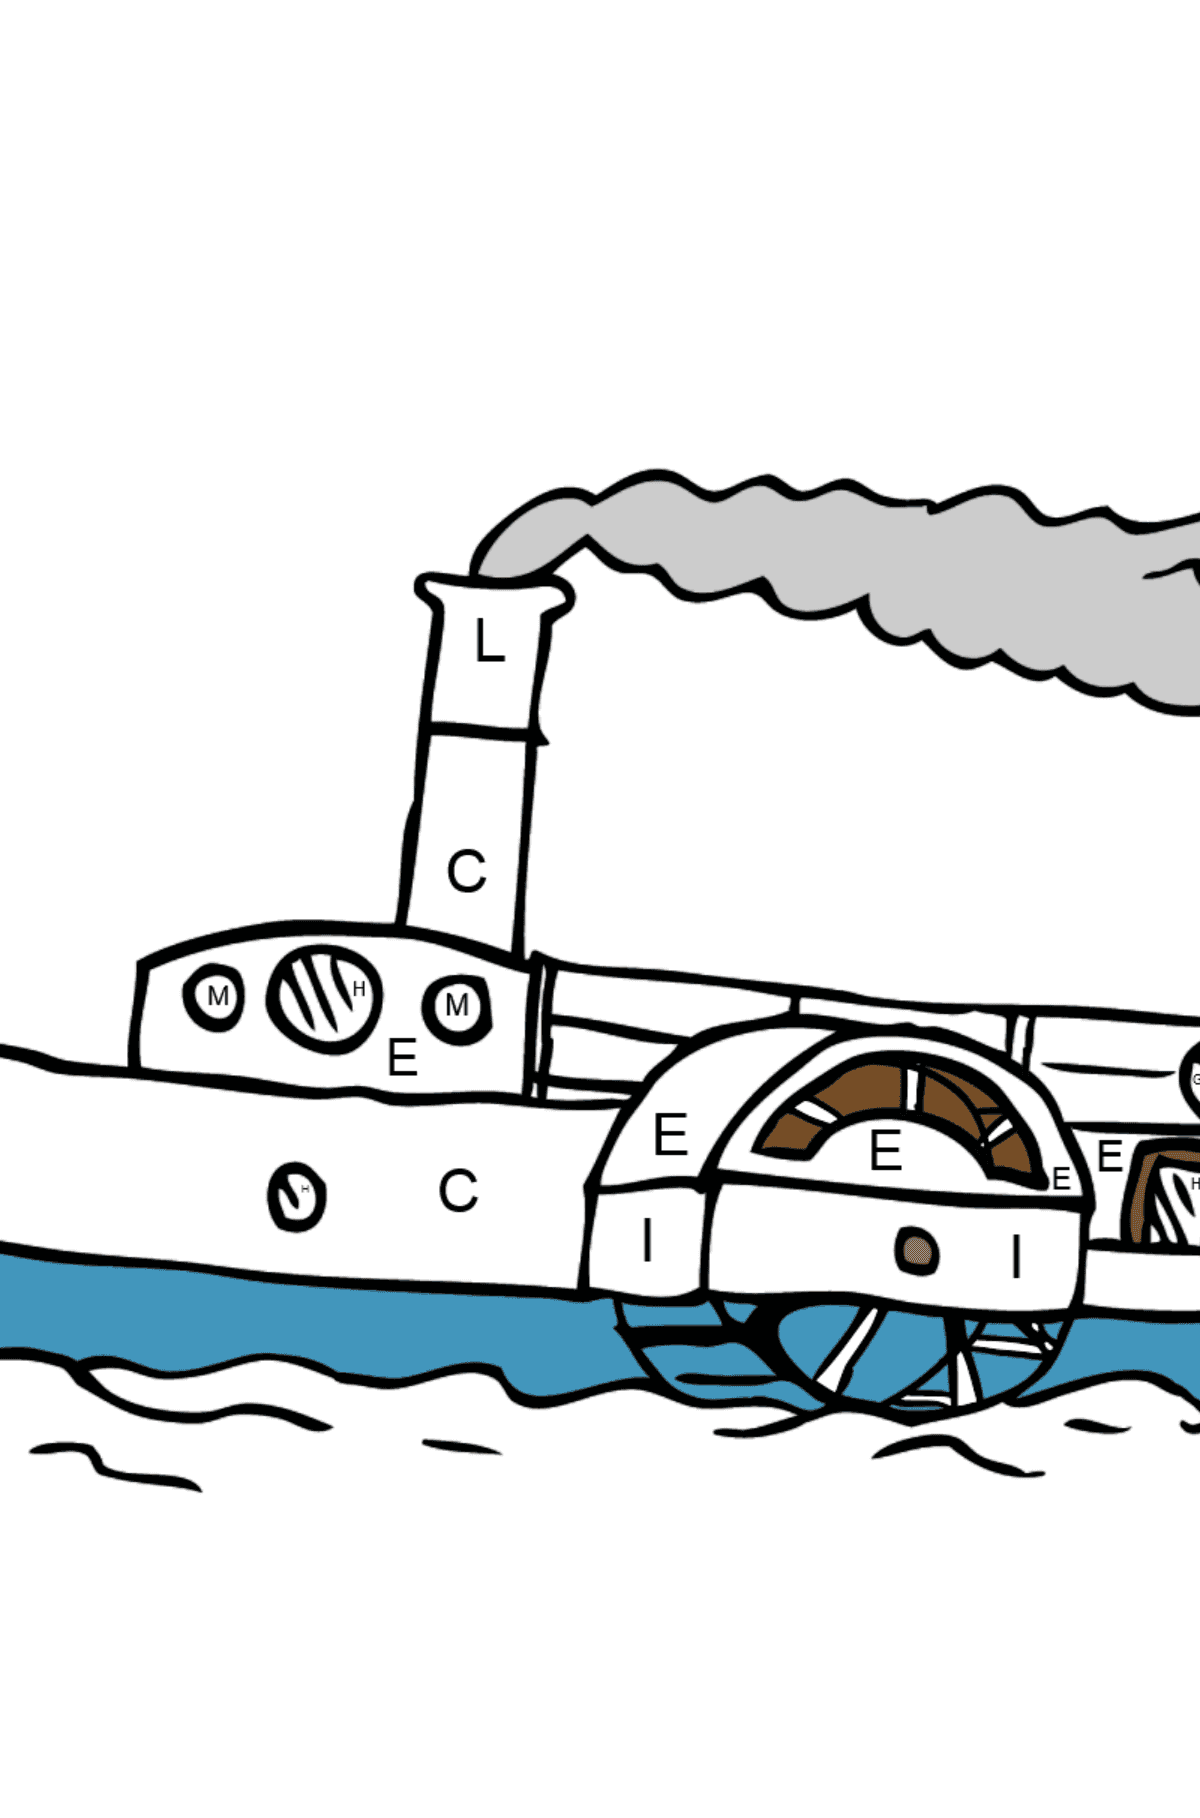 Coloriage - Un navire avec une roue à aubes - Coloriage par Lettres pour les Enfants